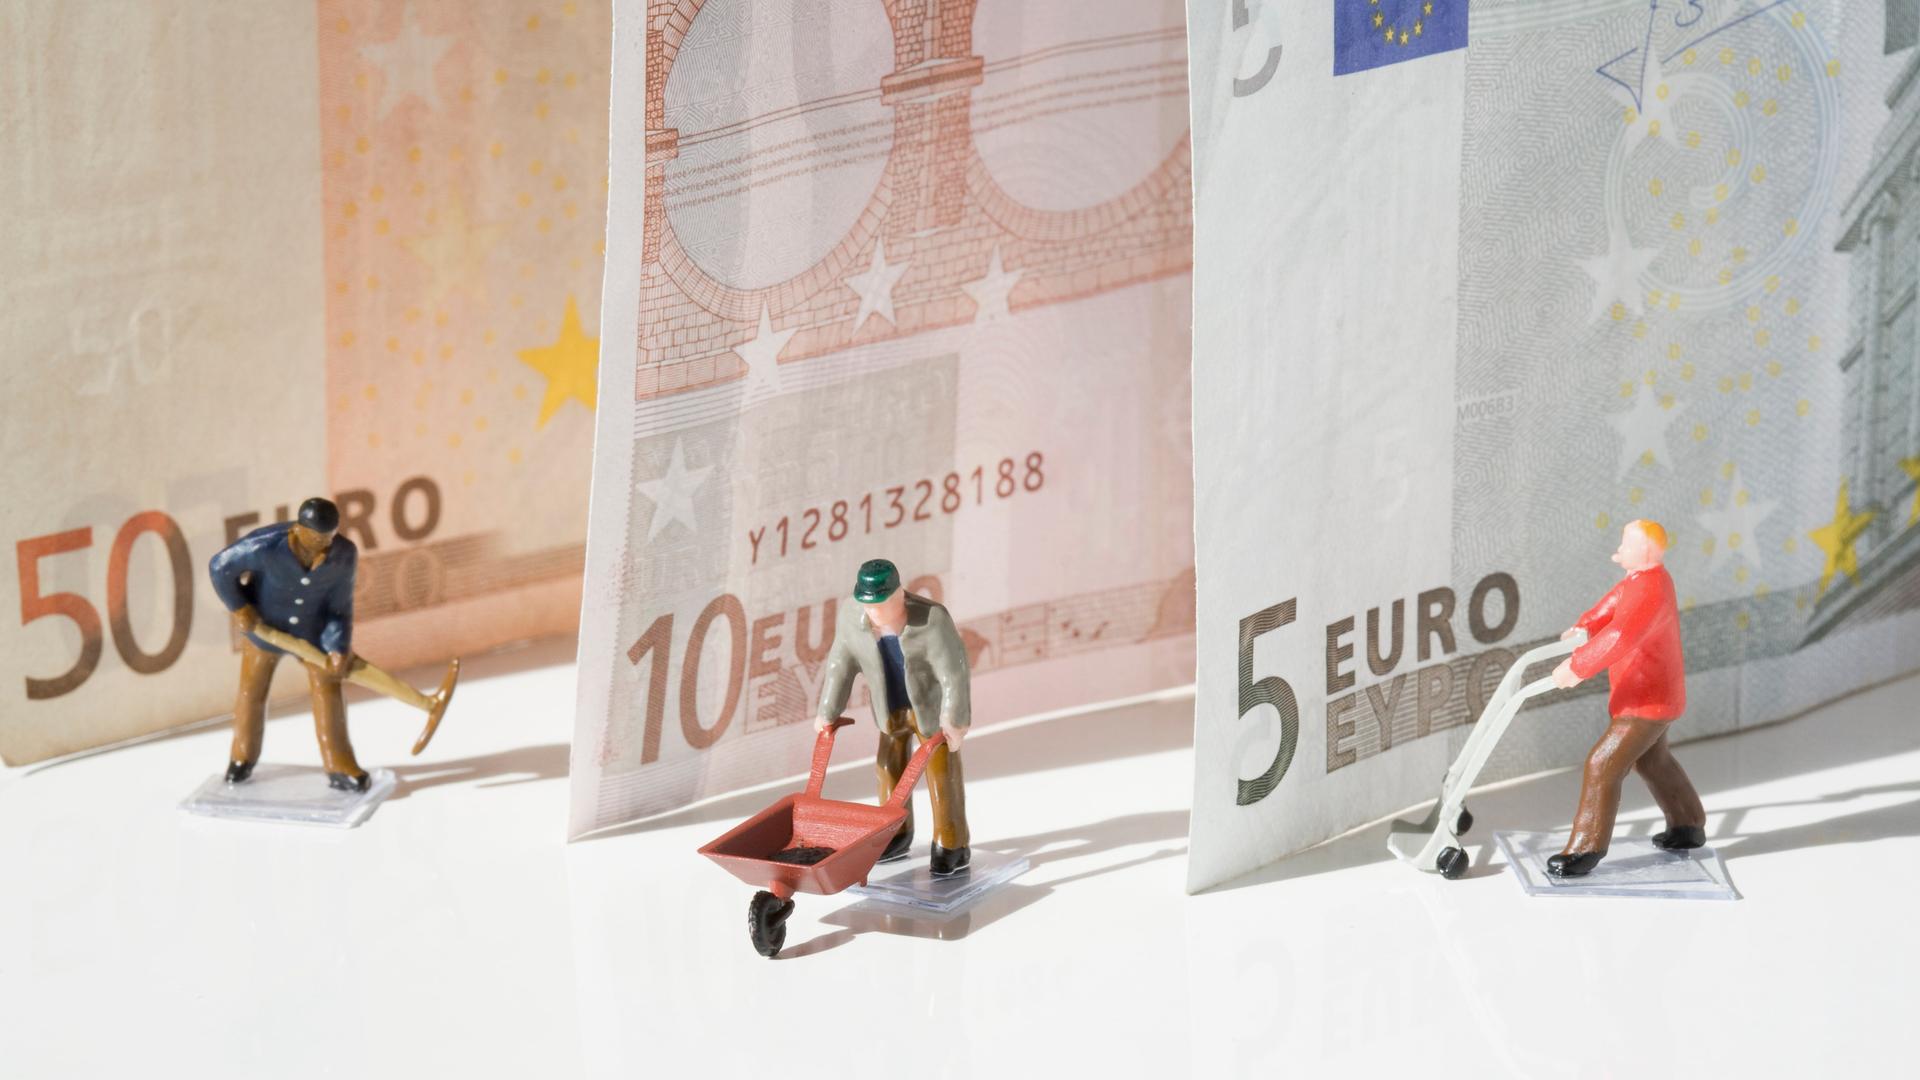 Kleine Arbeiterfiguren stehen vor drei Euro-Banknoten.